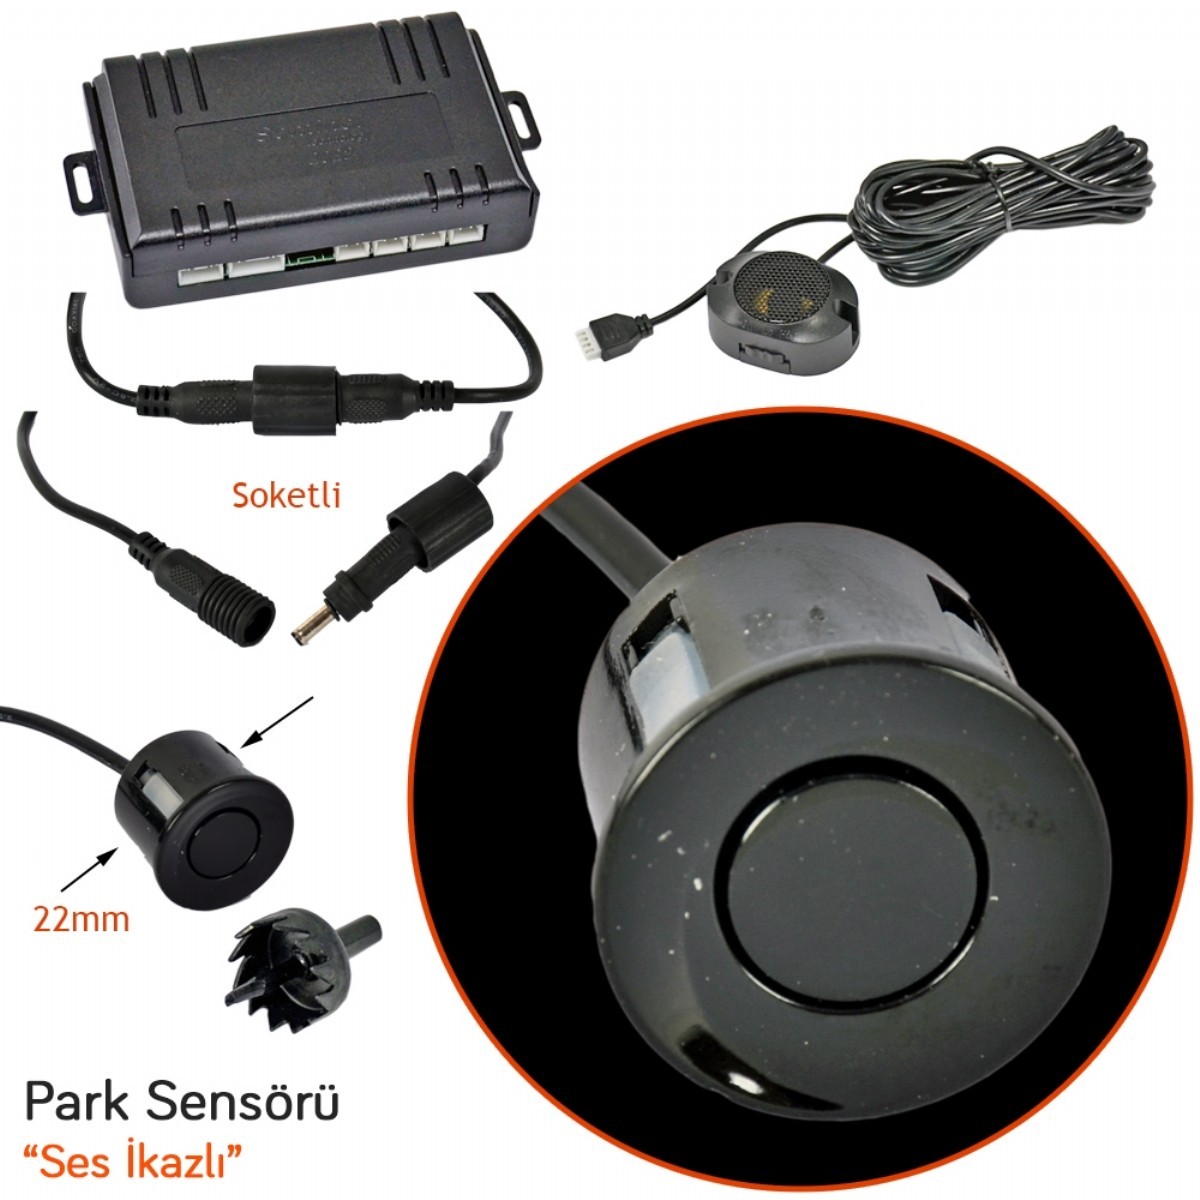 Park Sensörü | Sentinel Park Sensörü Ses İkazlı Siyah 22 mm SP-B3-S | 210-45-00040 |  | 